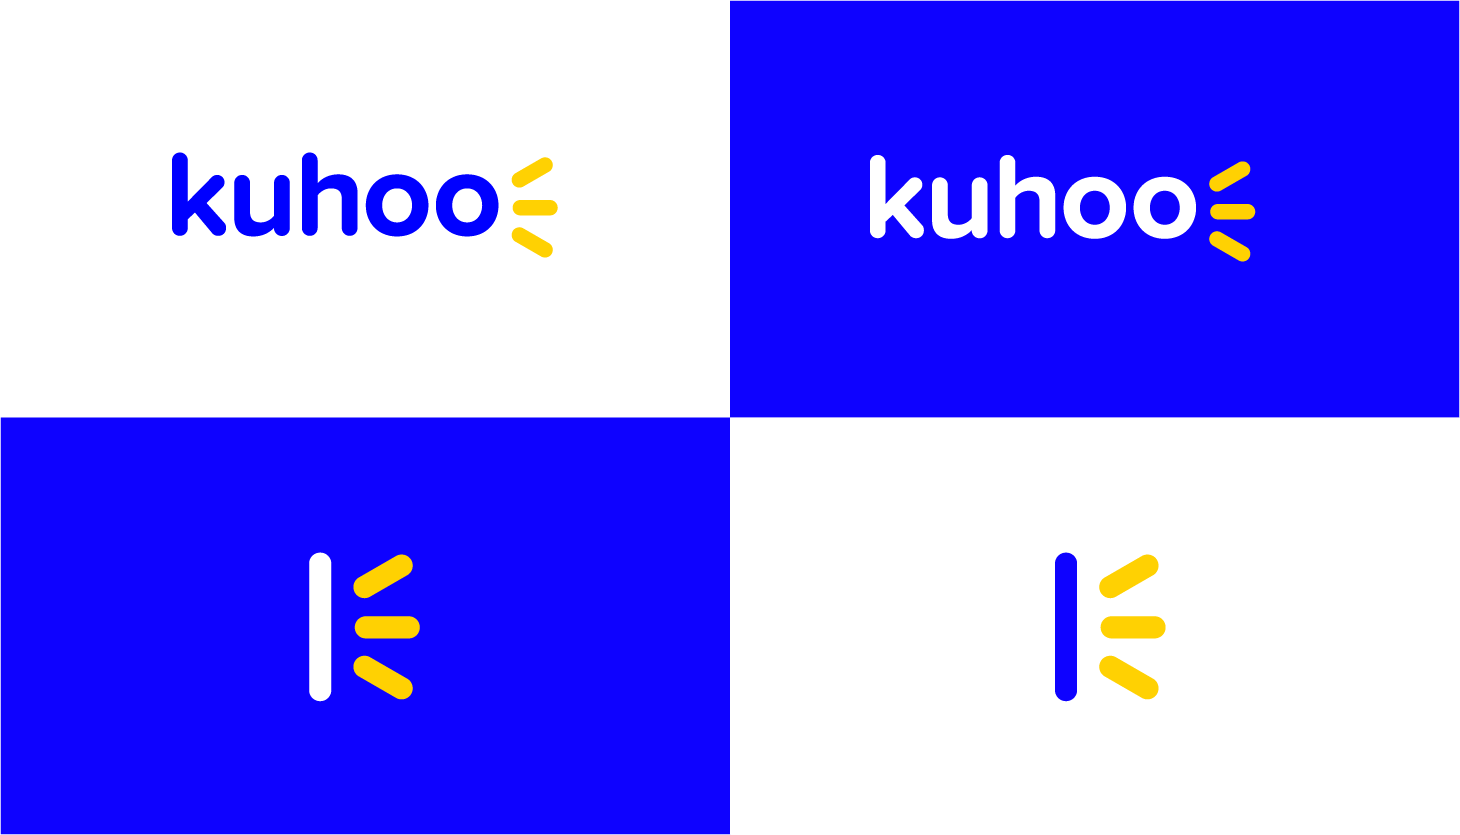 Kuhoo logo color variations